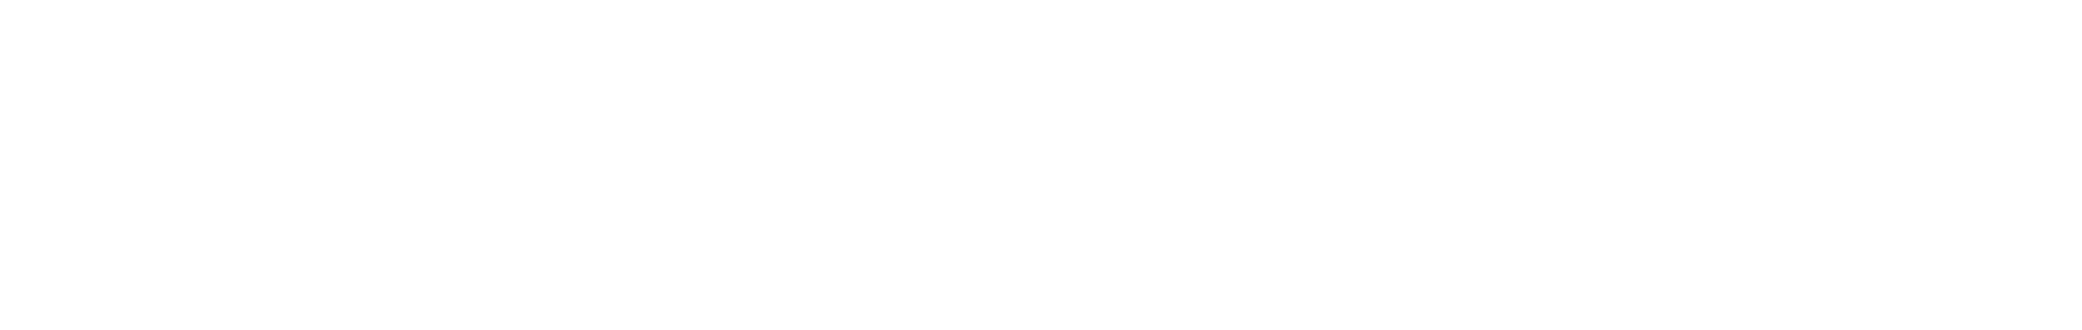 Leader Digital Logo White